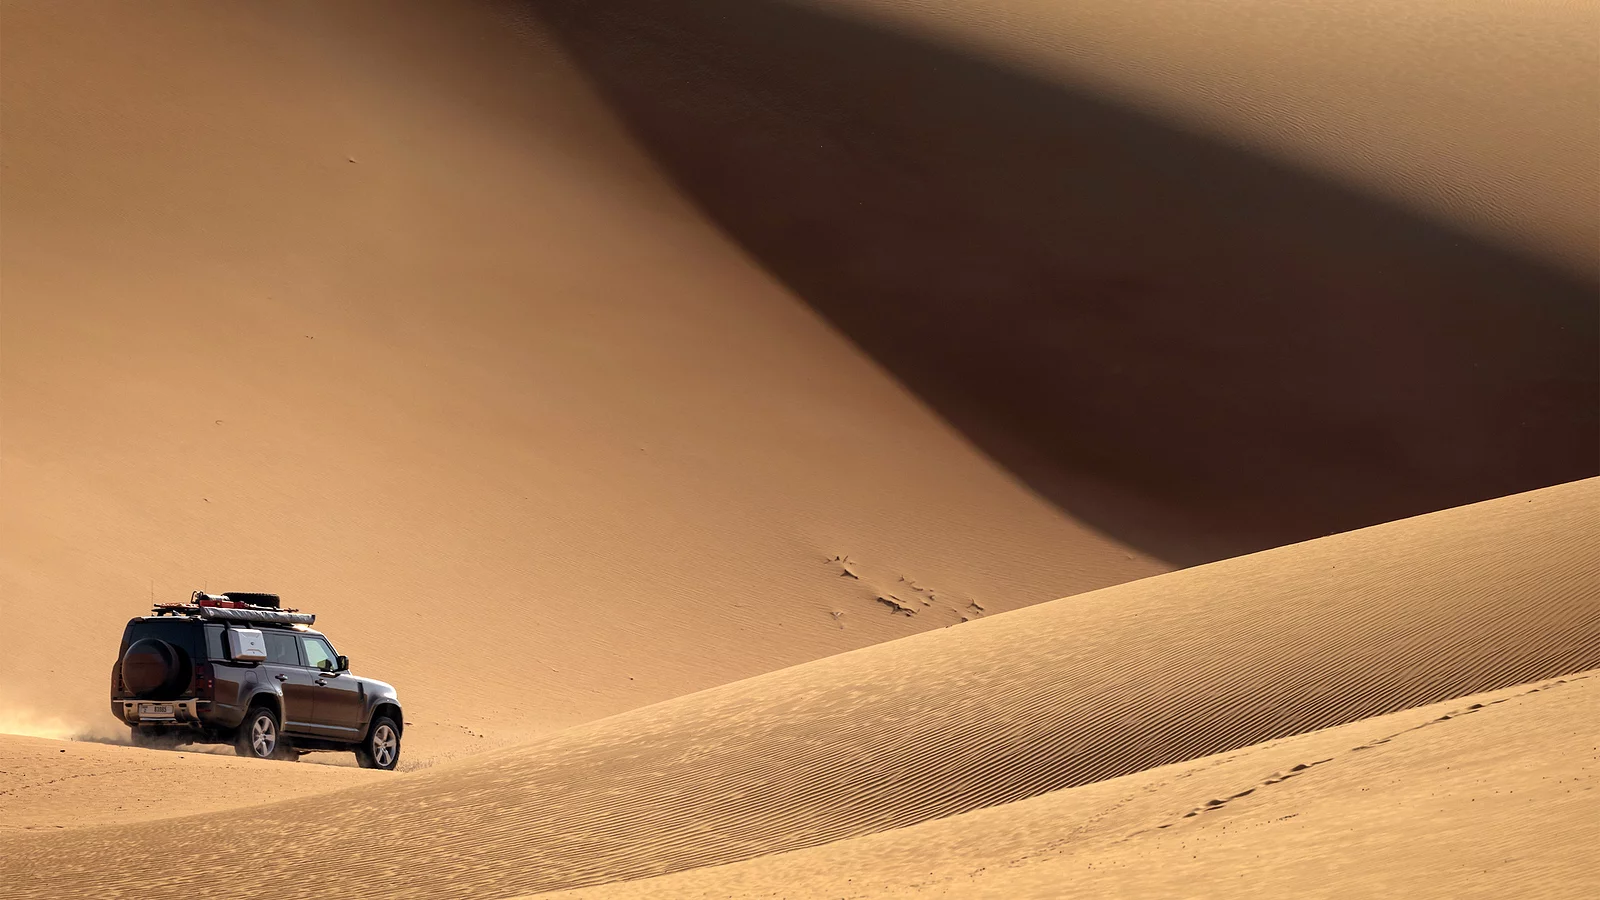 Defender driving on the desert